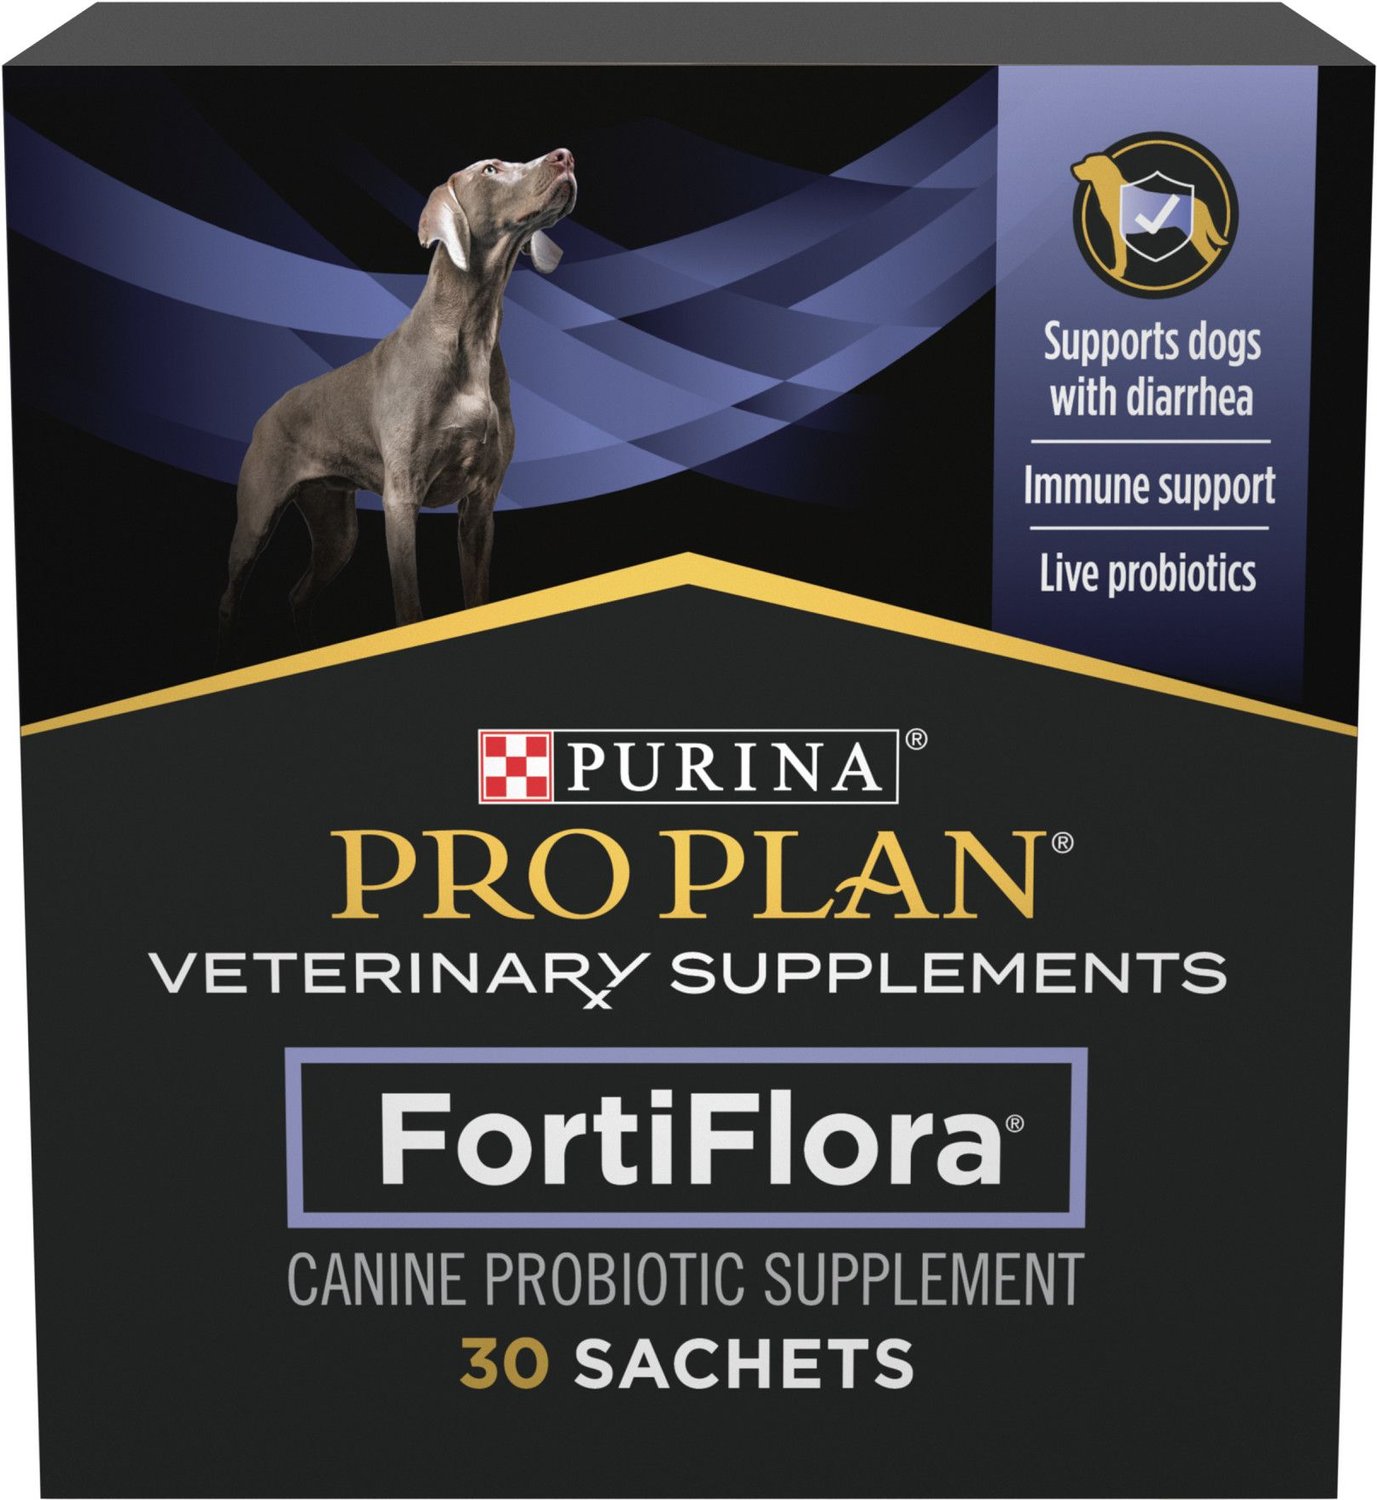 purina veterinary diets fortiflora